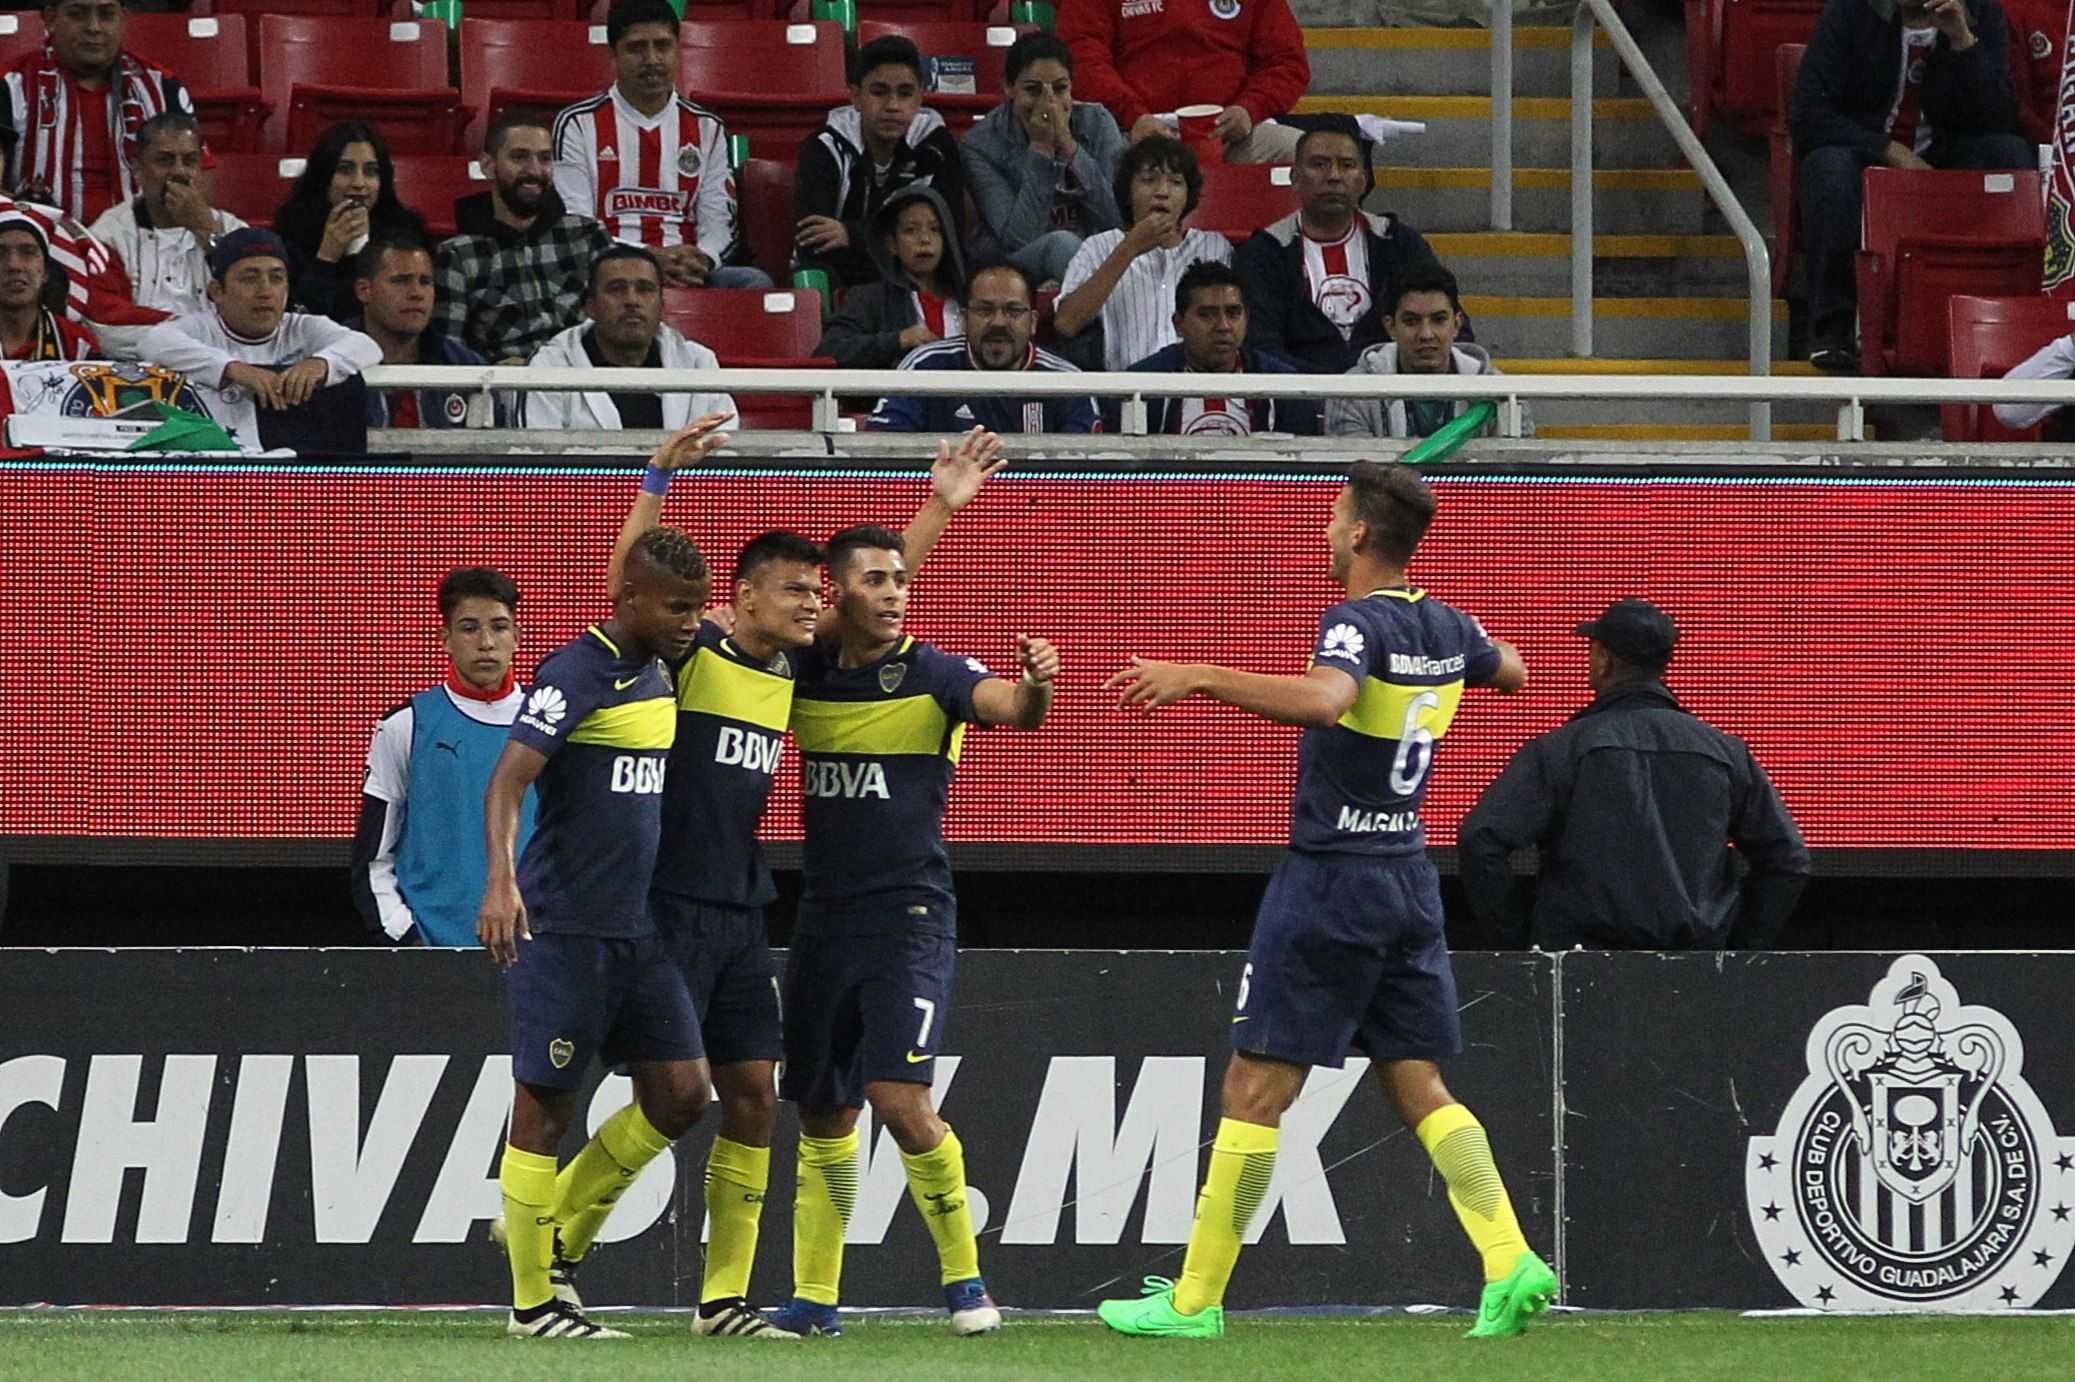 Dos àudios revelen pressions de Boca Juniors als àrbitres